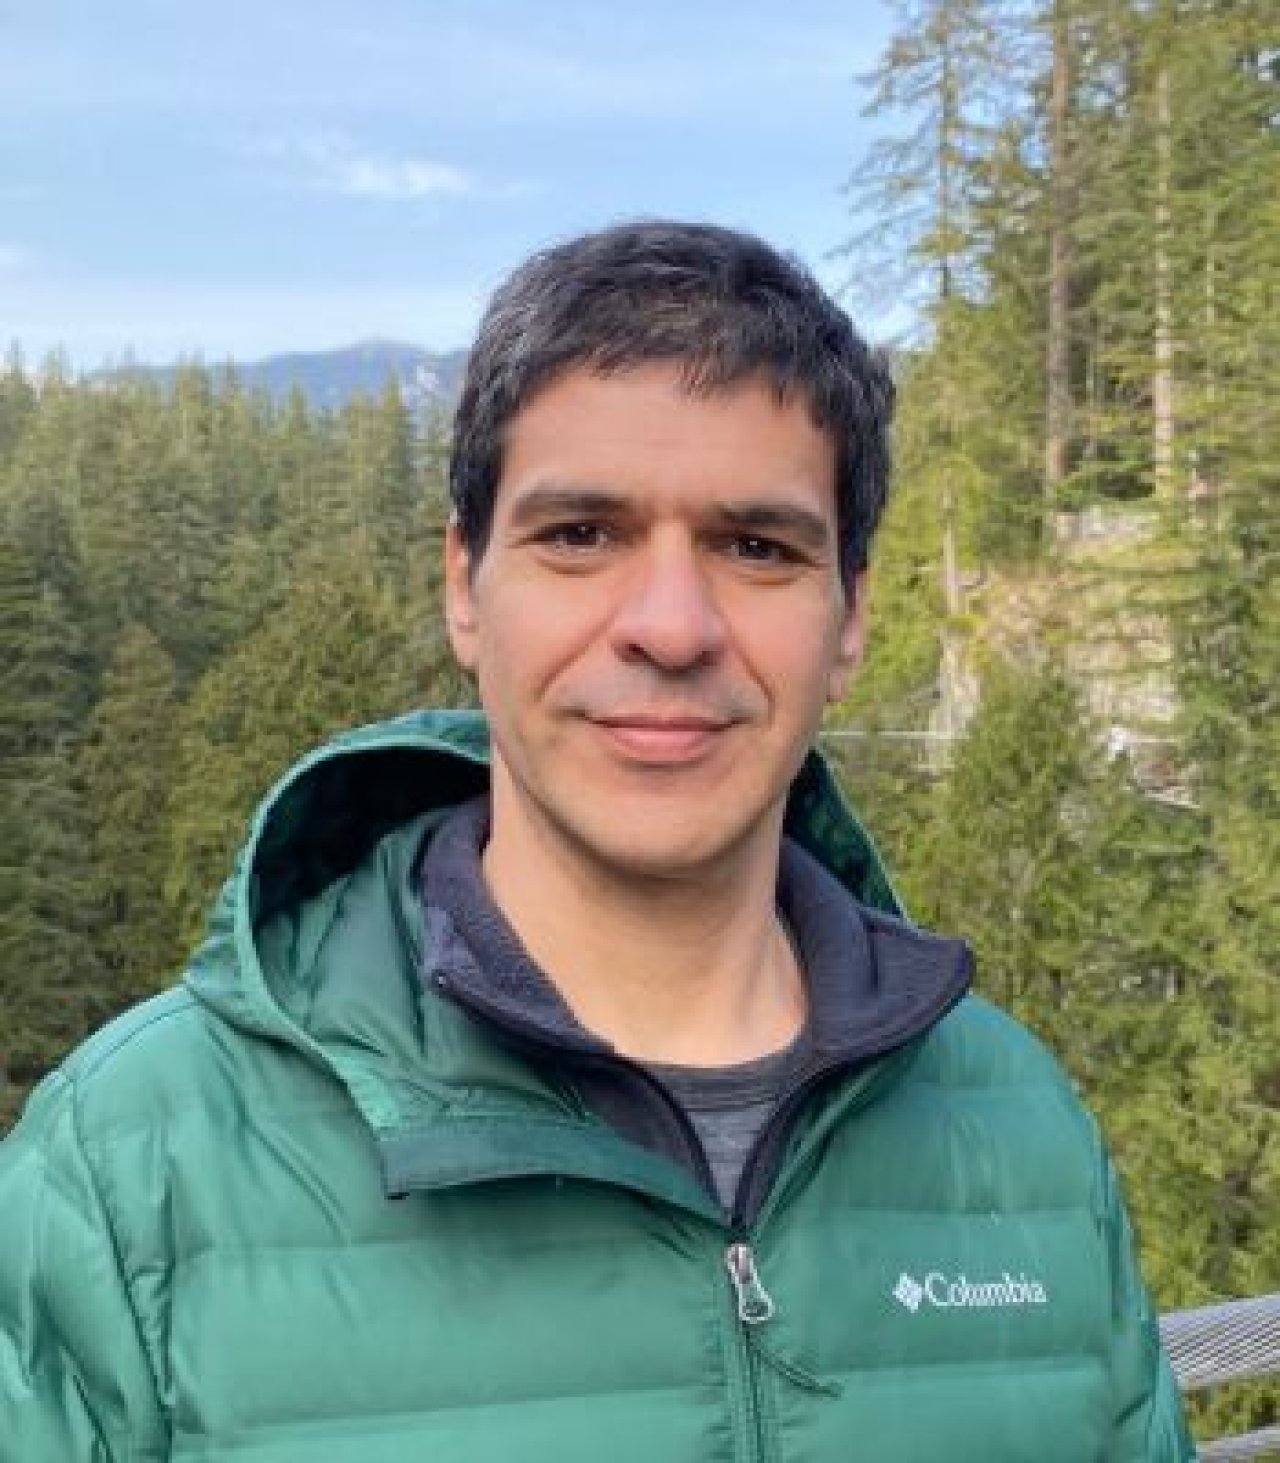 Mauricio Carrasquilla, PhD's profile picture